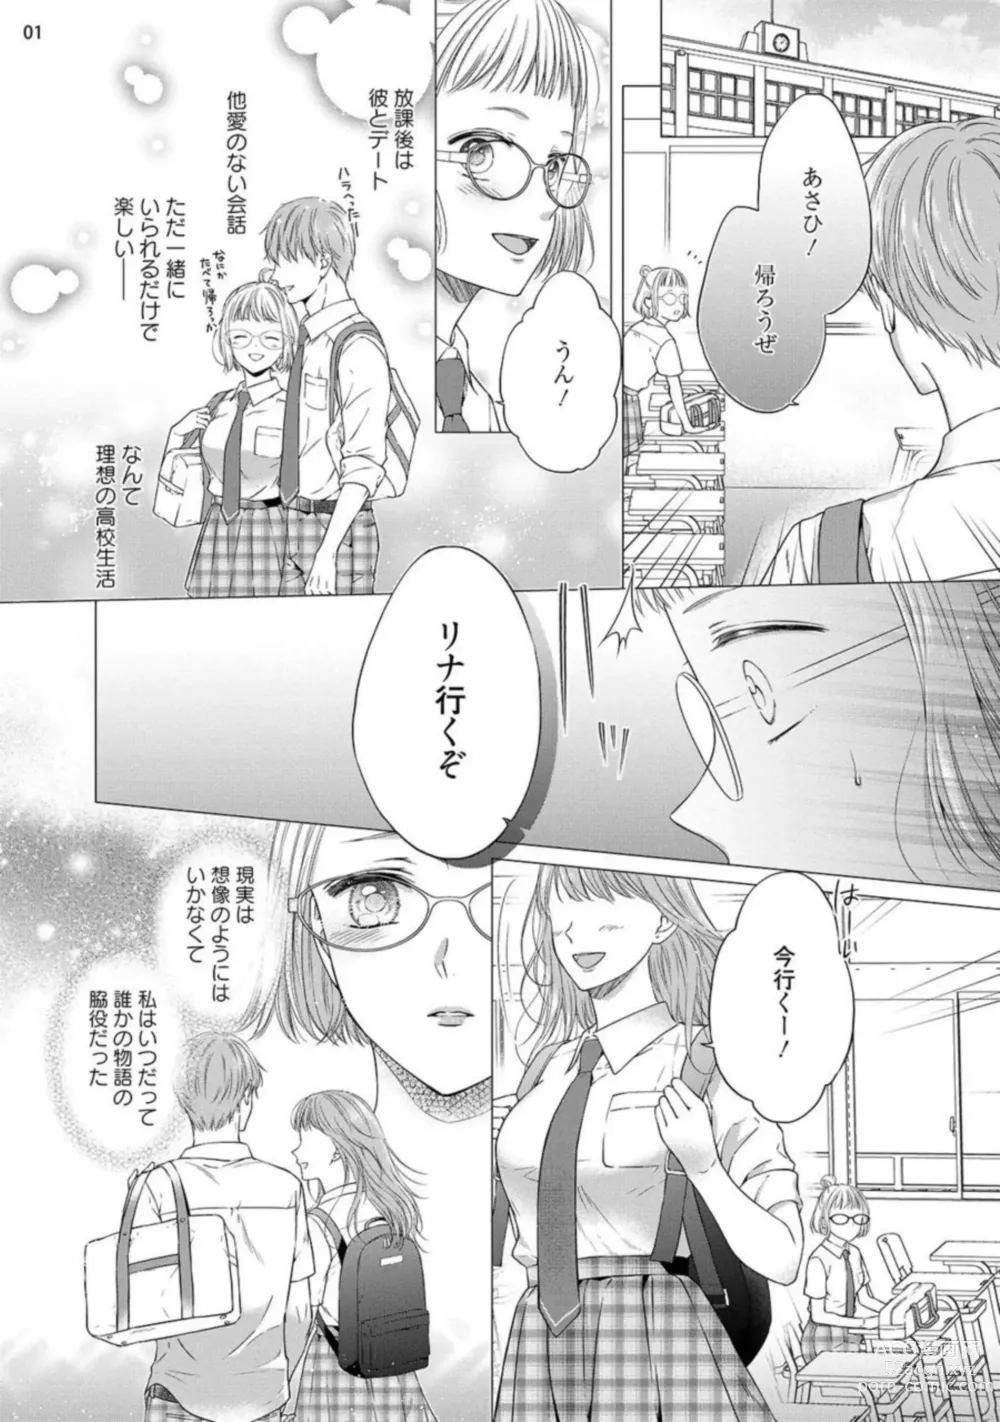 Page 2 of manga Erotikkufirumu Shojo Kantoku wa Sekushī Danyū no Gokujō Teku ni Nurete 3